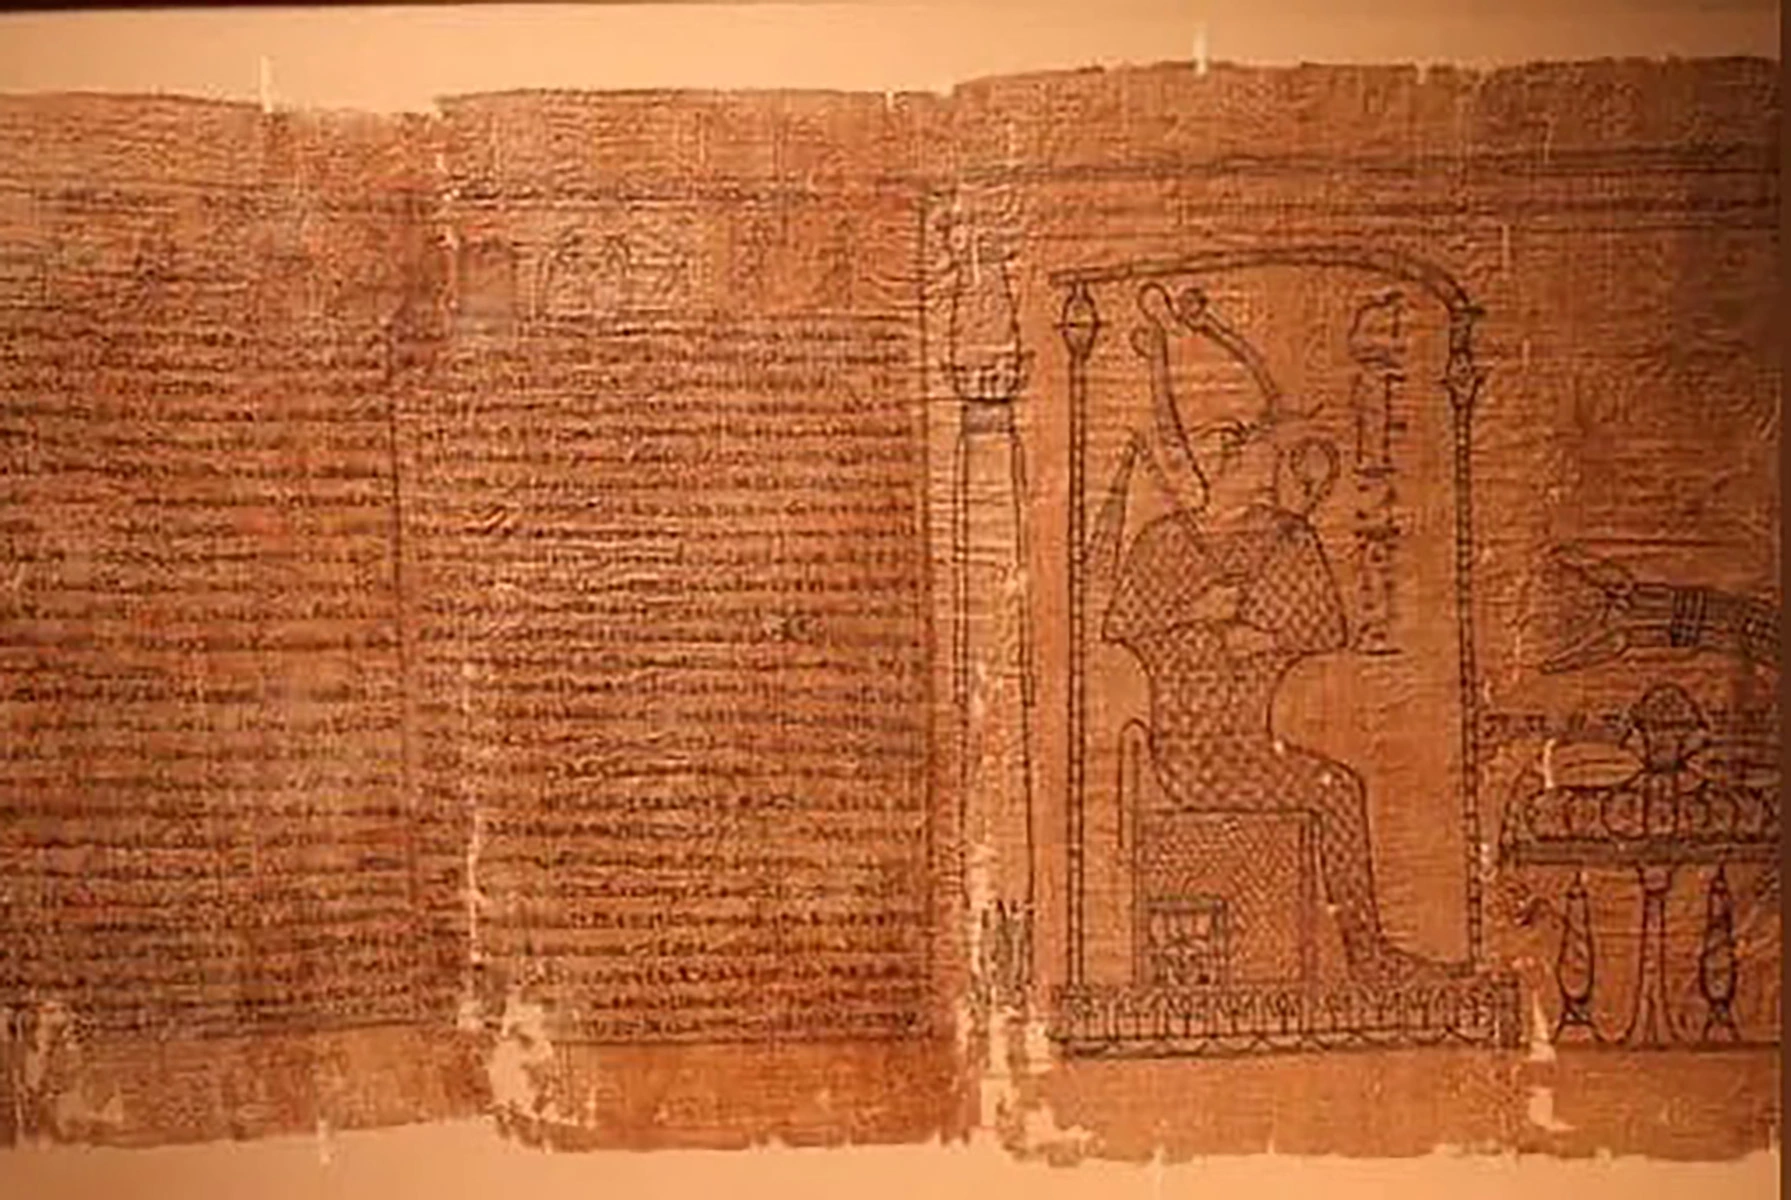 <p>На фото: часть &laquo;Книги мертвых&raquo;. Слева находится блок с текстом. А справа изображен Осирис, бог возрождения, царь загробного мира в древнеегипетской мифологии</p>